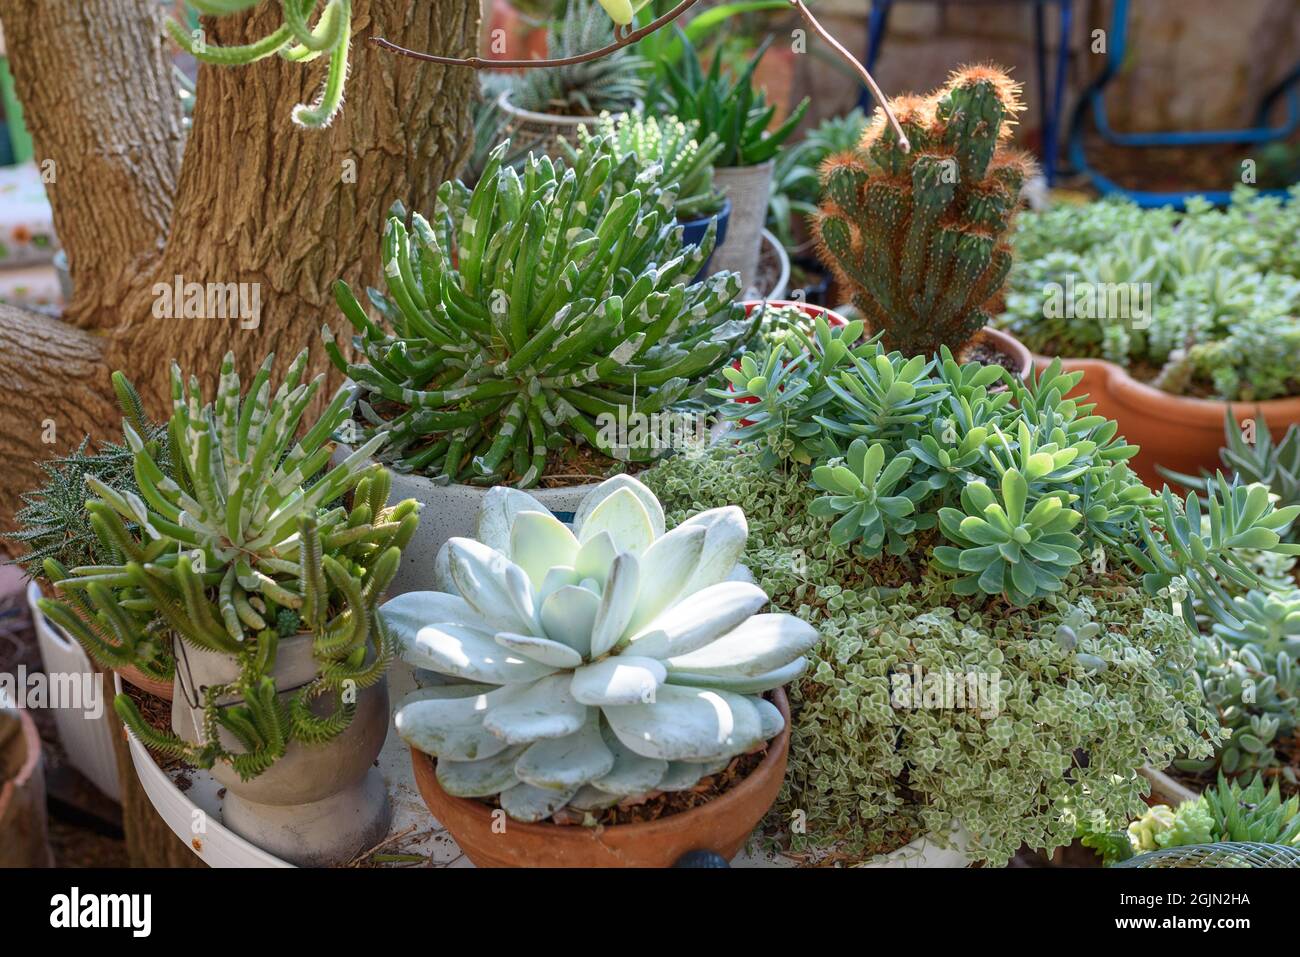 Succulent plants echeveria, sedum, senecio and cactus cereus in flower pots in sunny garden. Stock Photo